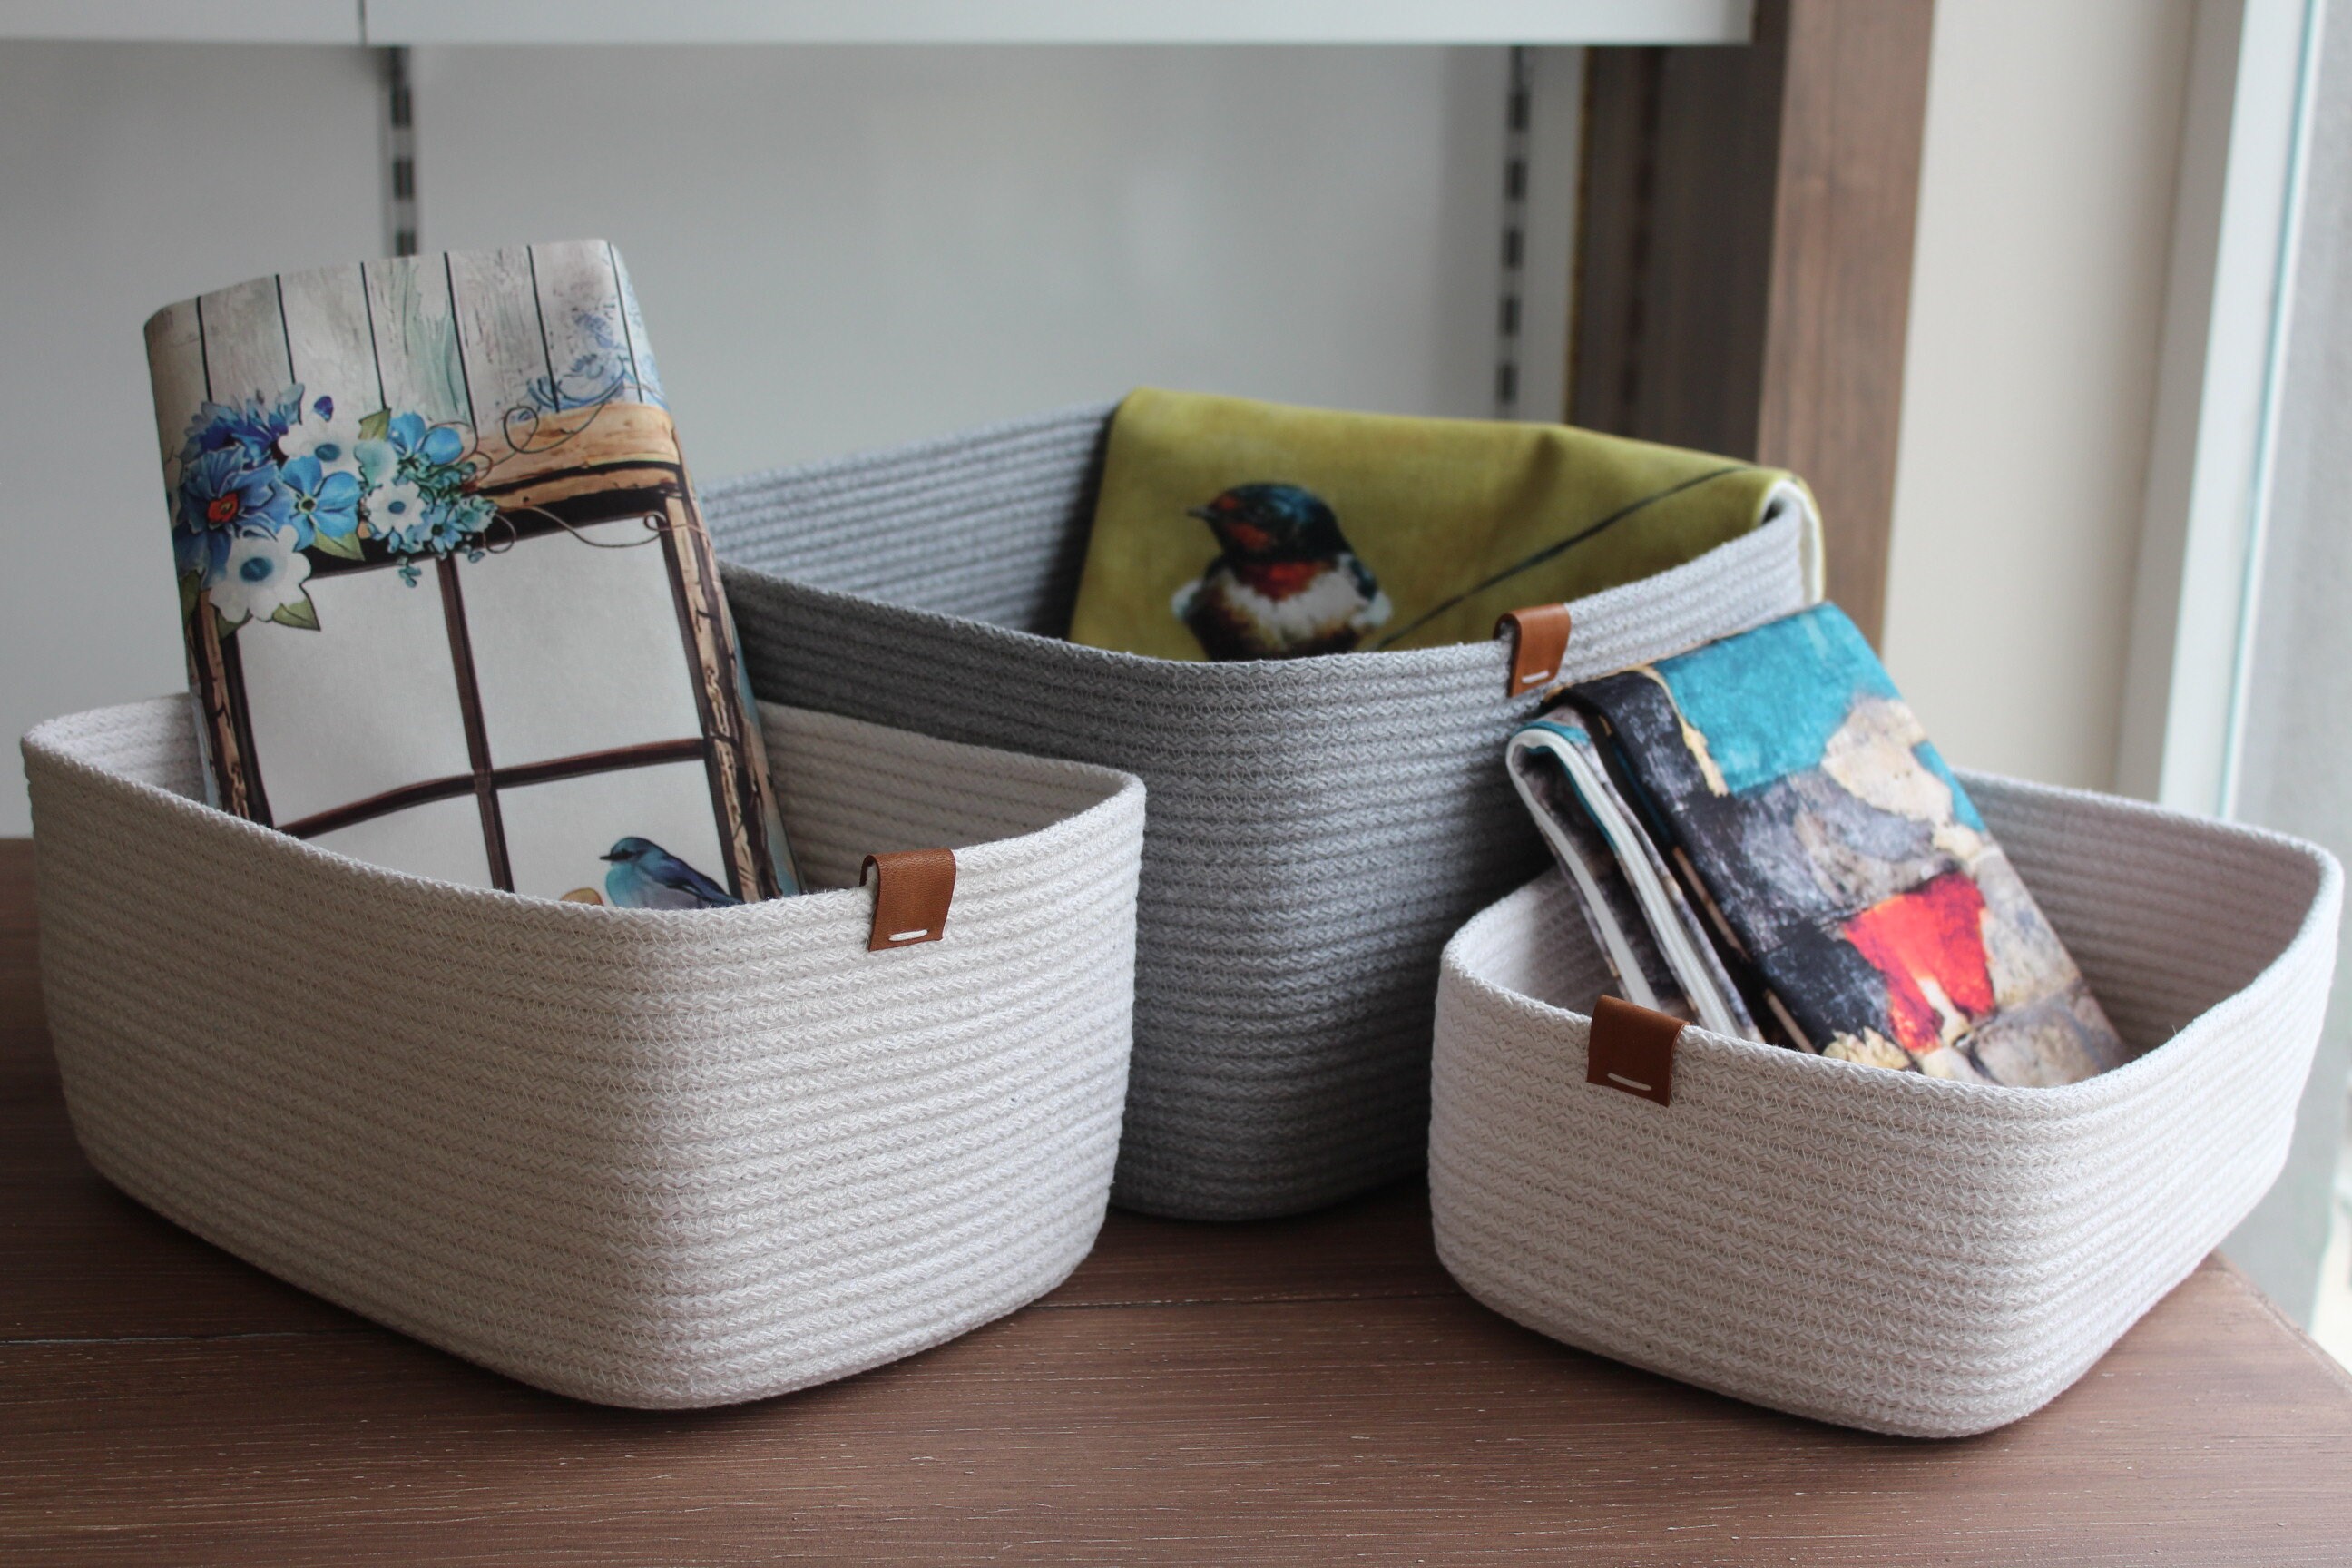 Braided Yarn Storage Baskets